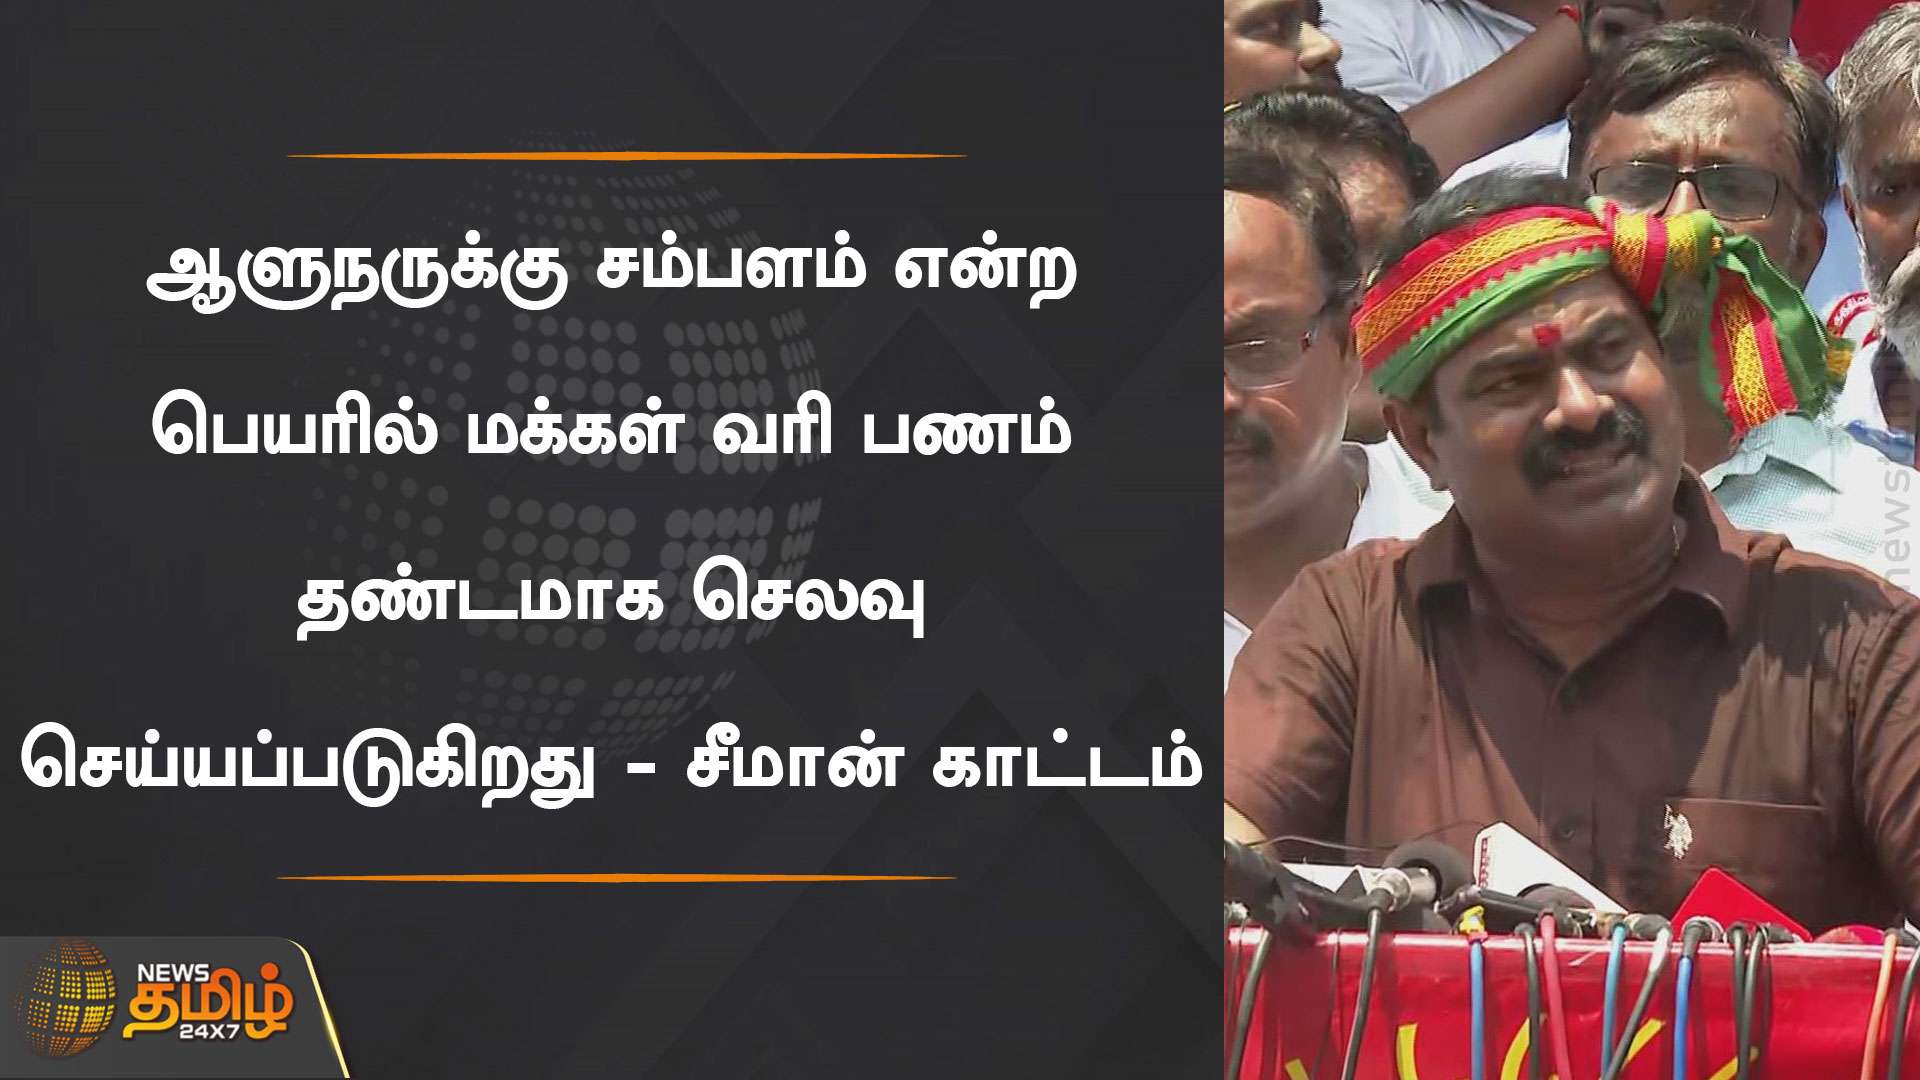 ஆளுநருக்கு சம்பளம் என்ற பெயரில் தண்டமாக செலவாகும் மக்கள் வரி பணம் | TN Governor 